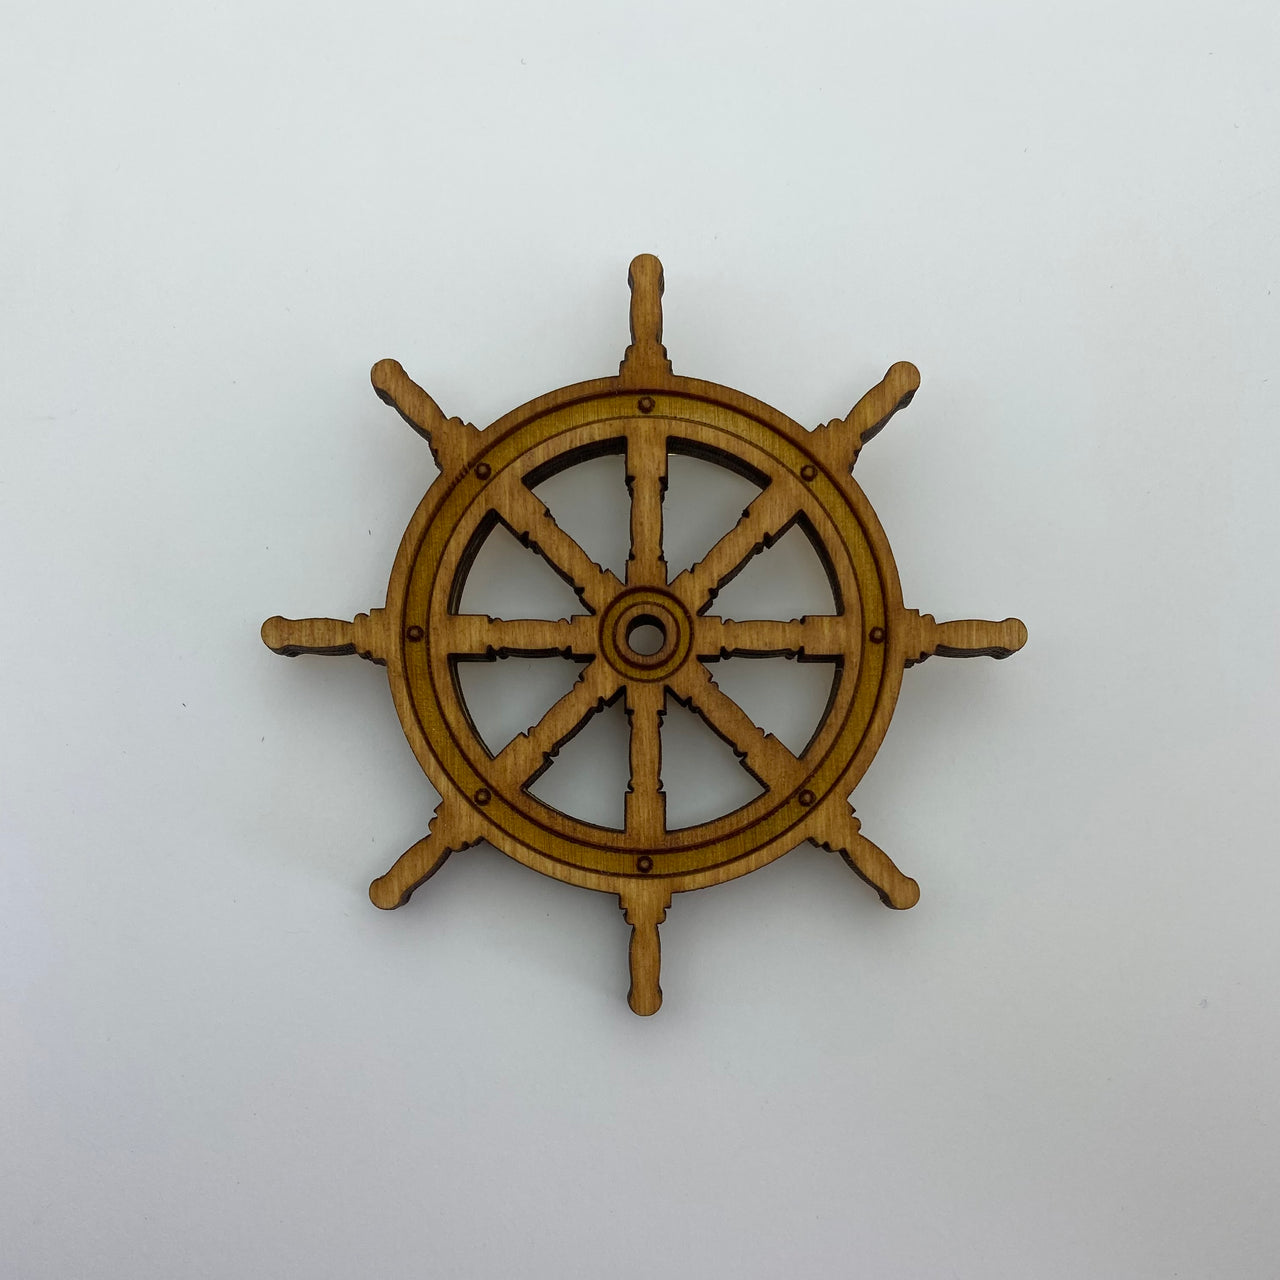 SALE! Wooden Ships Wheel Litewood™ Brooch